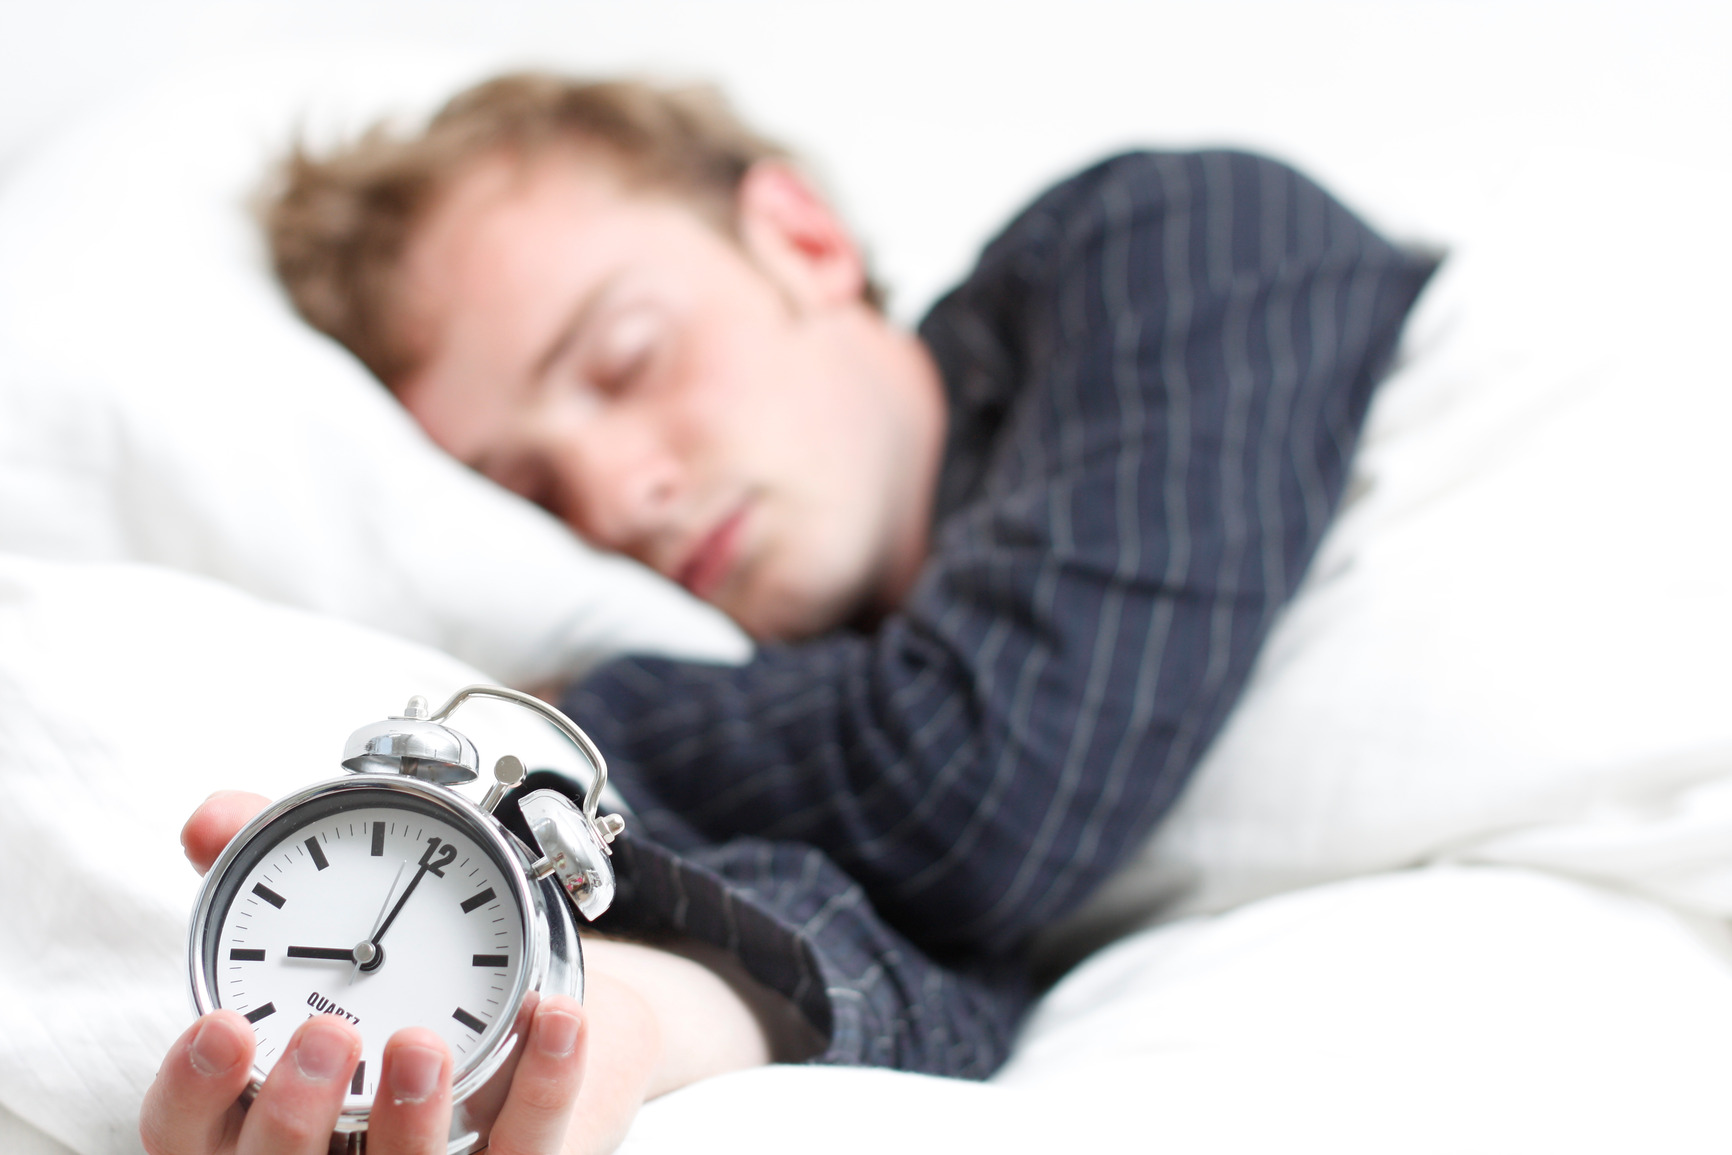 کم خوابی شدید منجر به افزایش وزن میشود